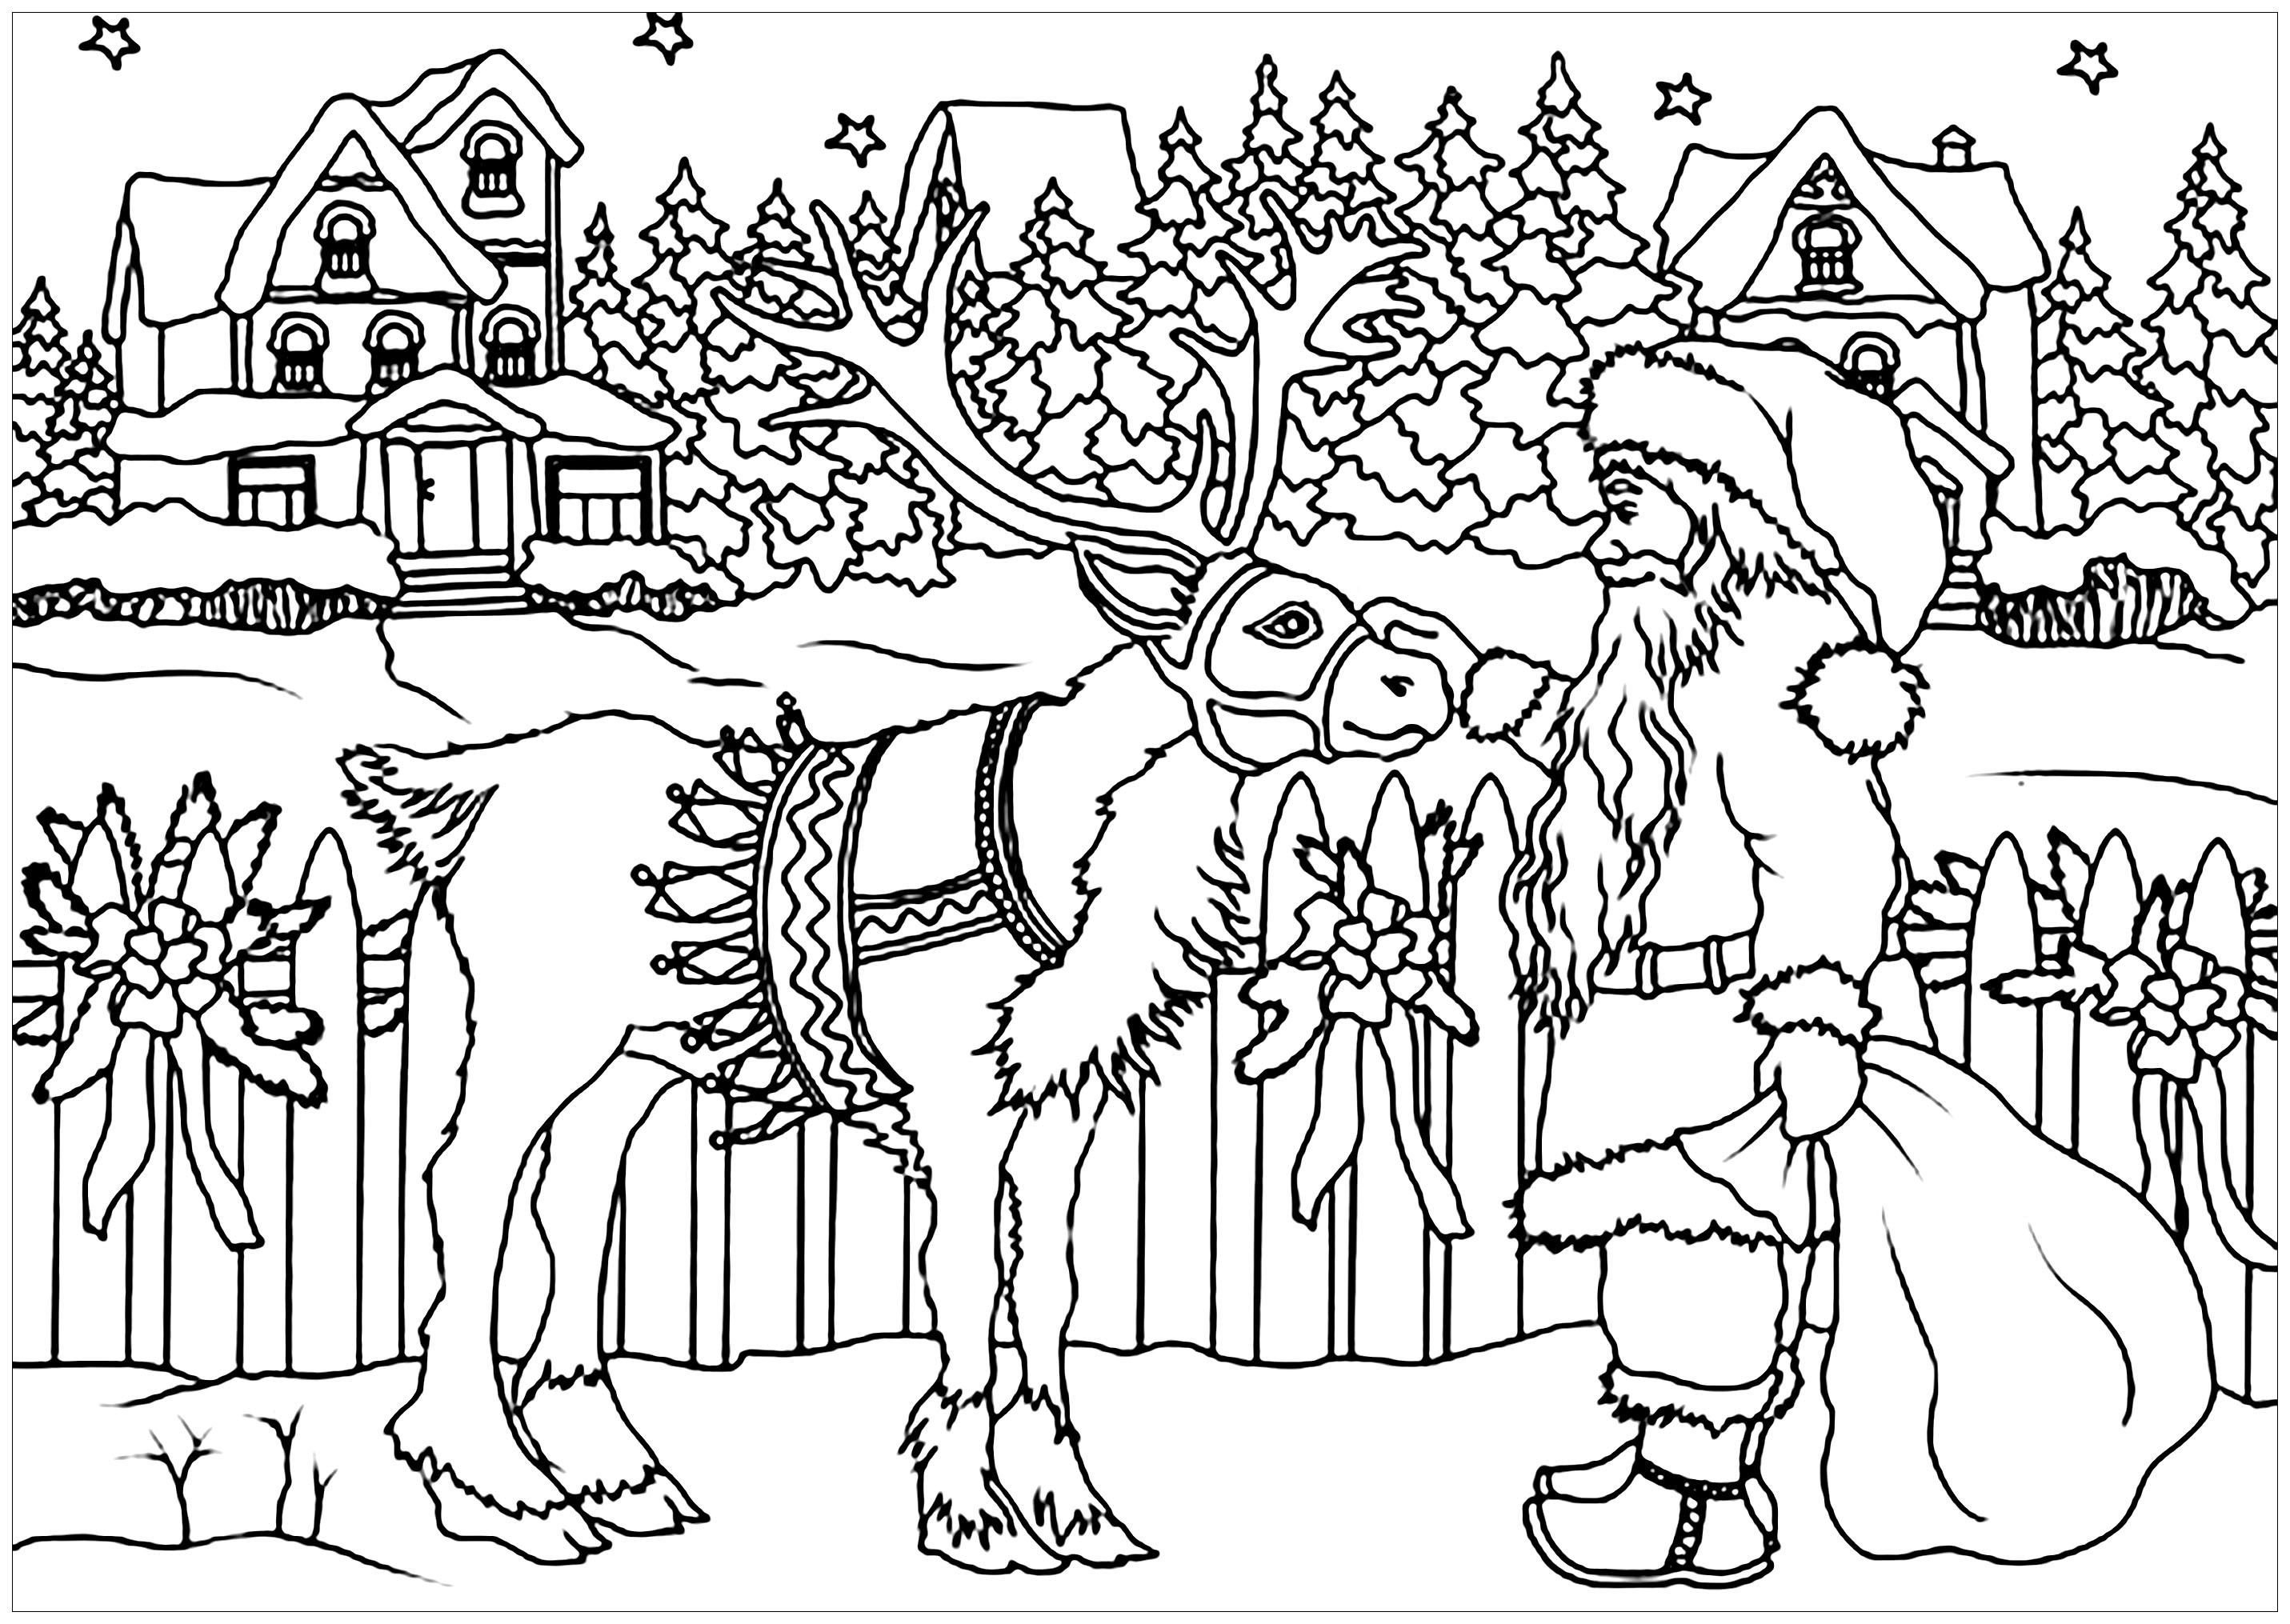 Père Noël et renne - Noël - Coloriages difficiles pour adultes